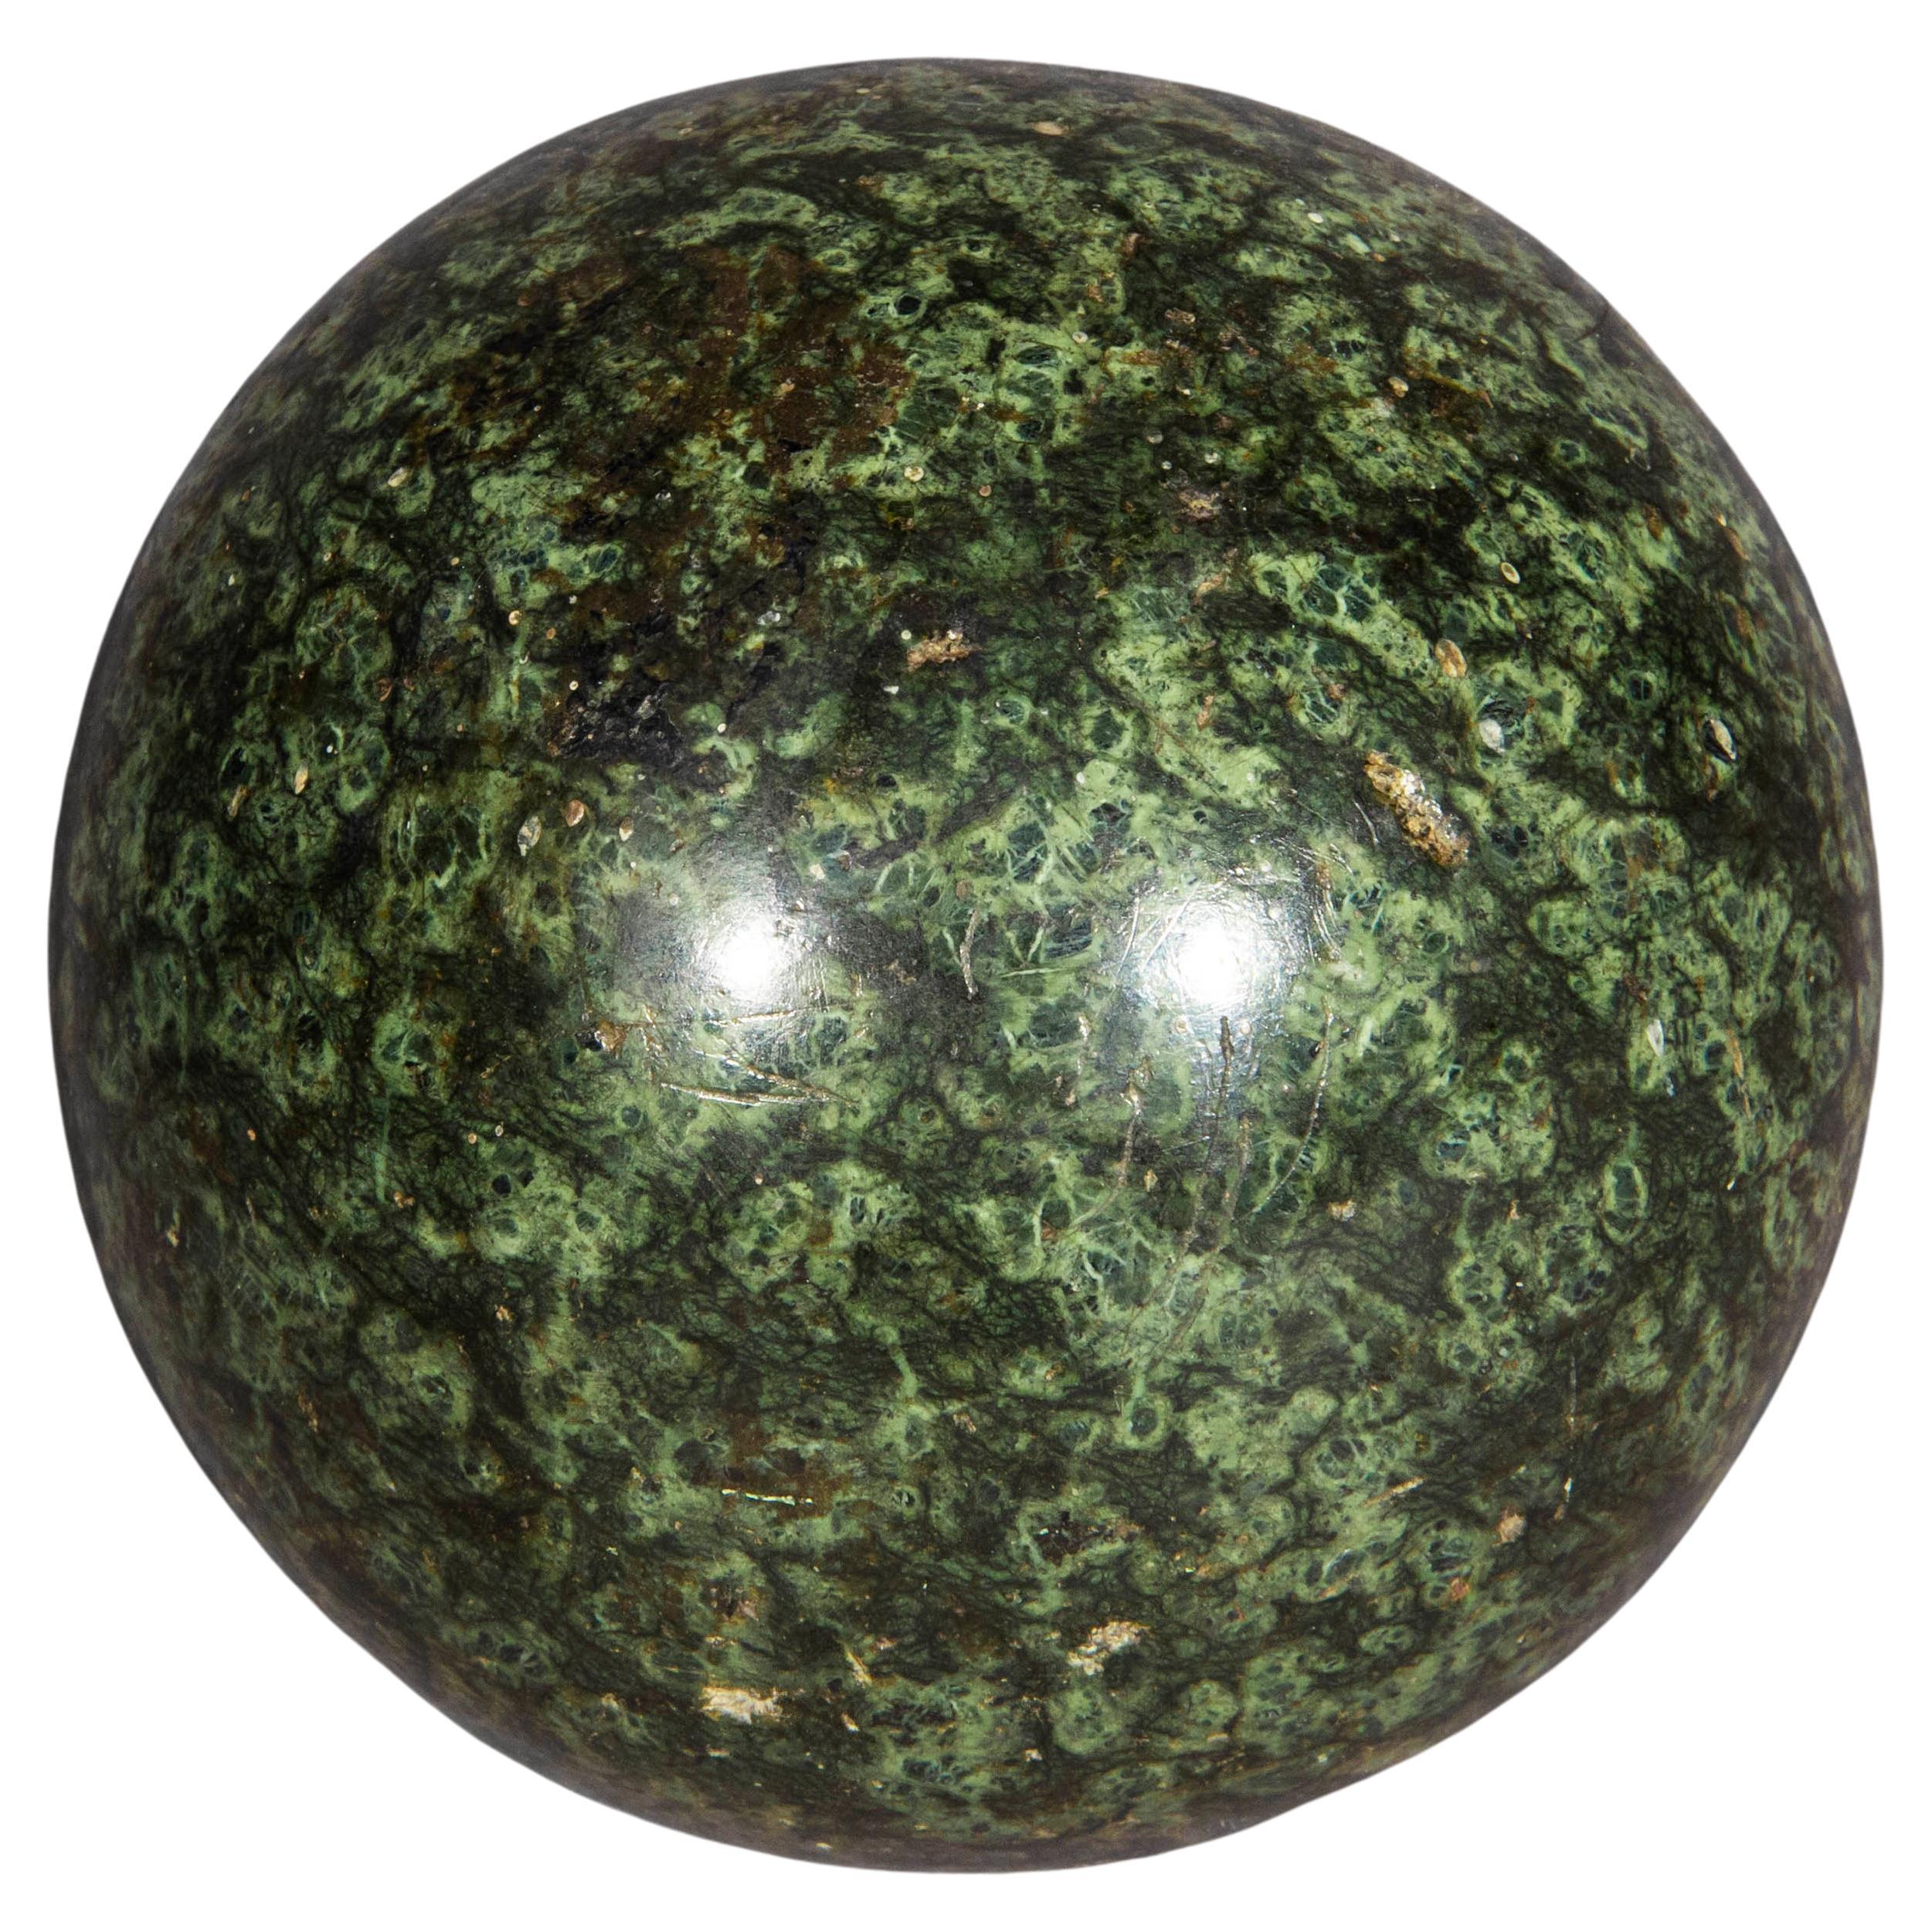 17th Century Grand Tour Green Serpentine Specimen Sphere